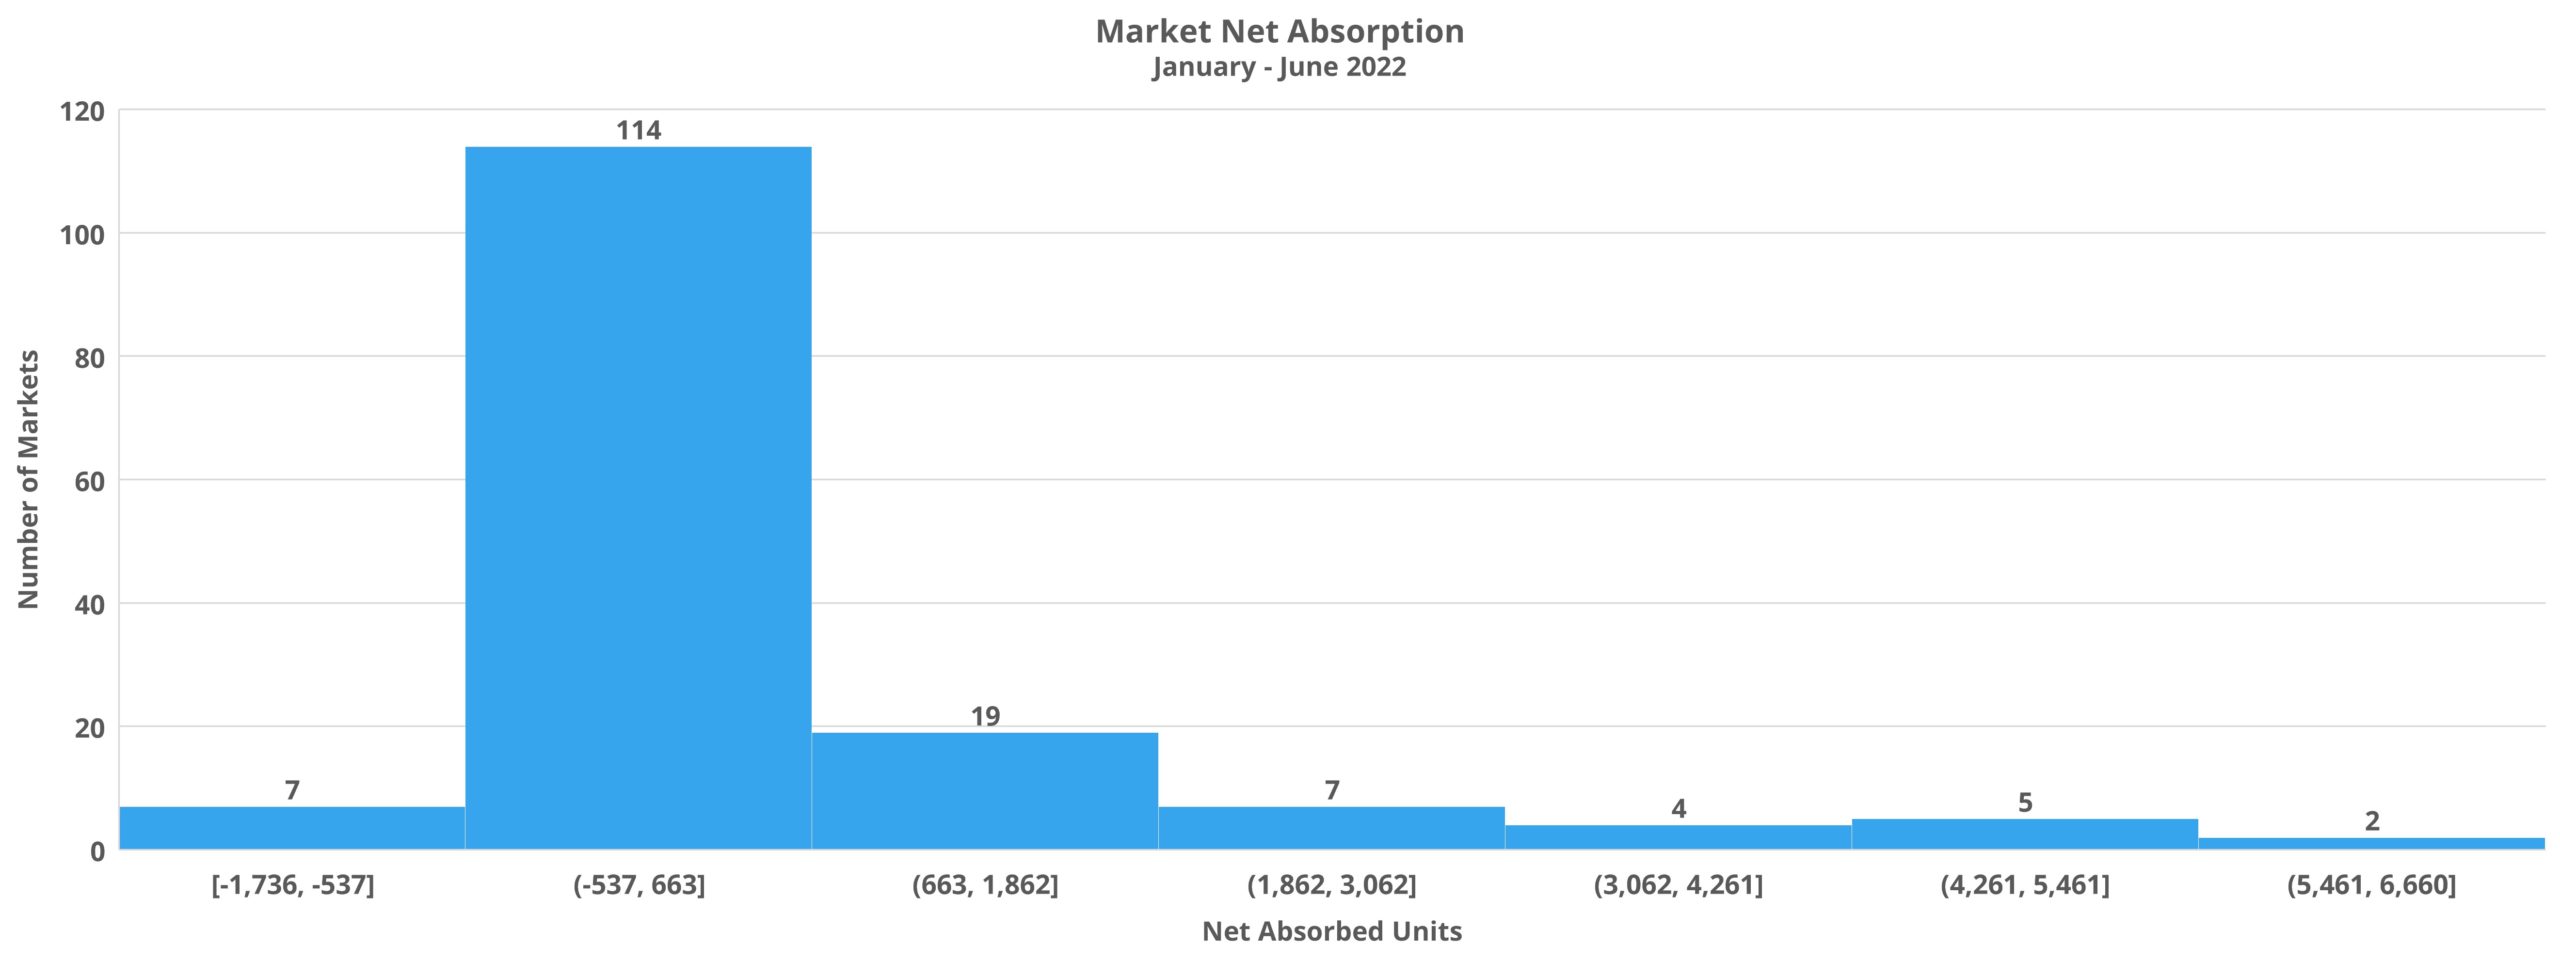 Market Net Absorption